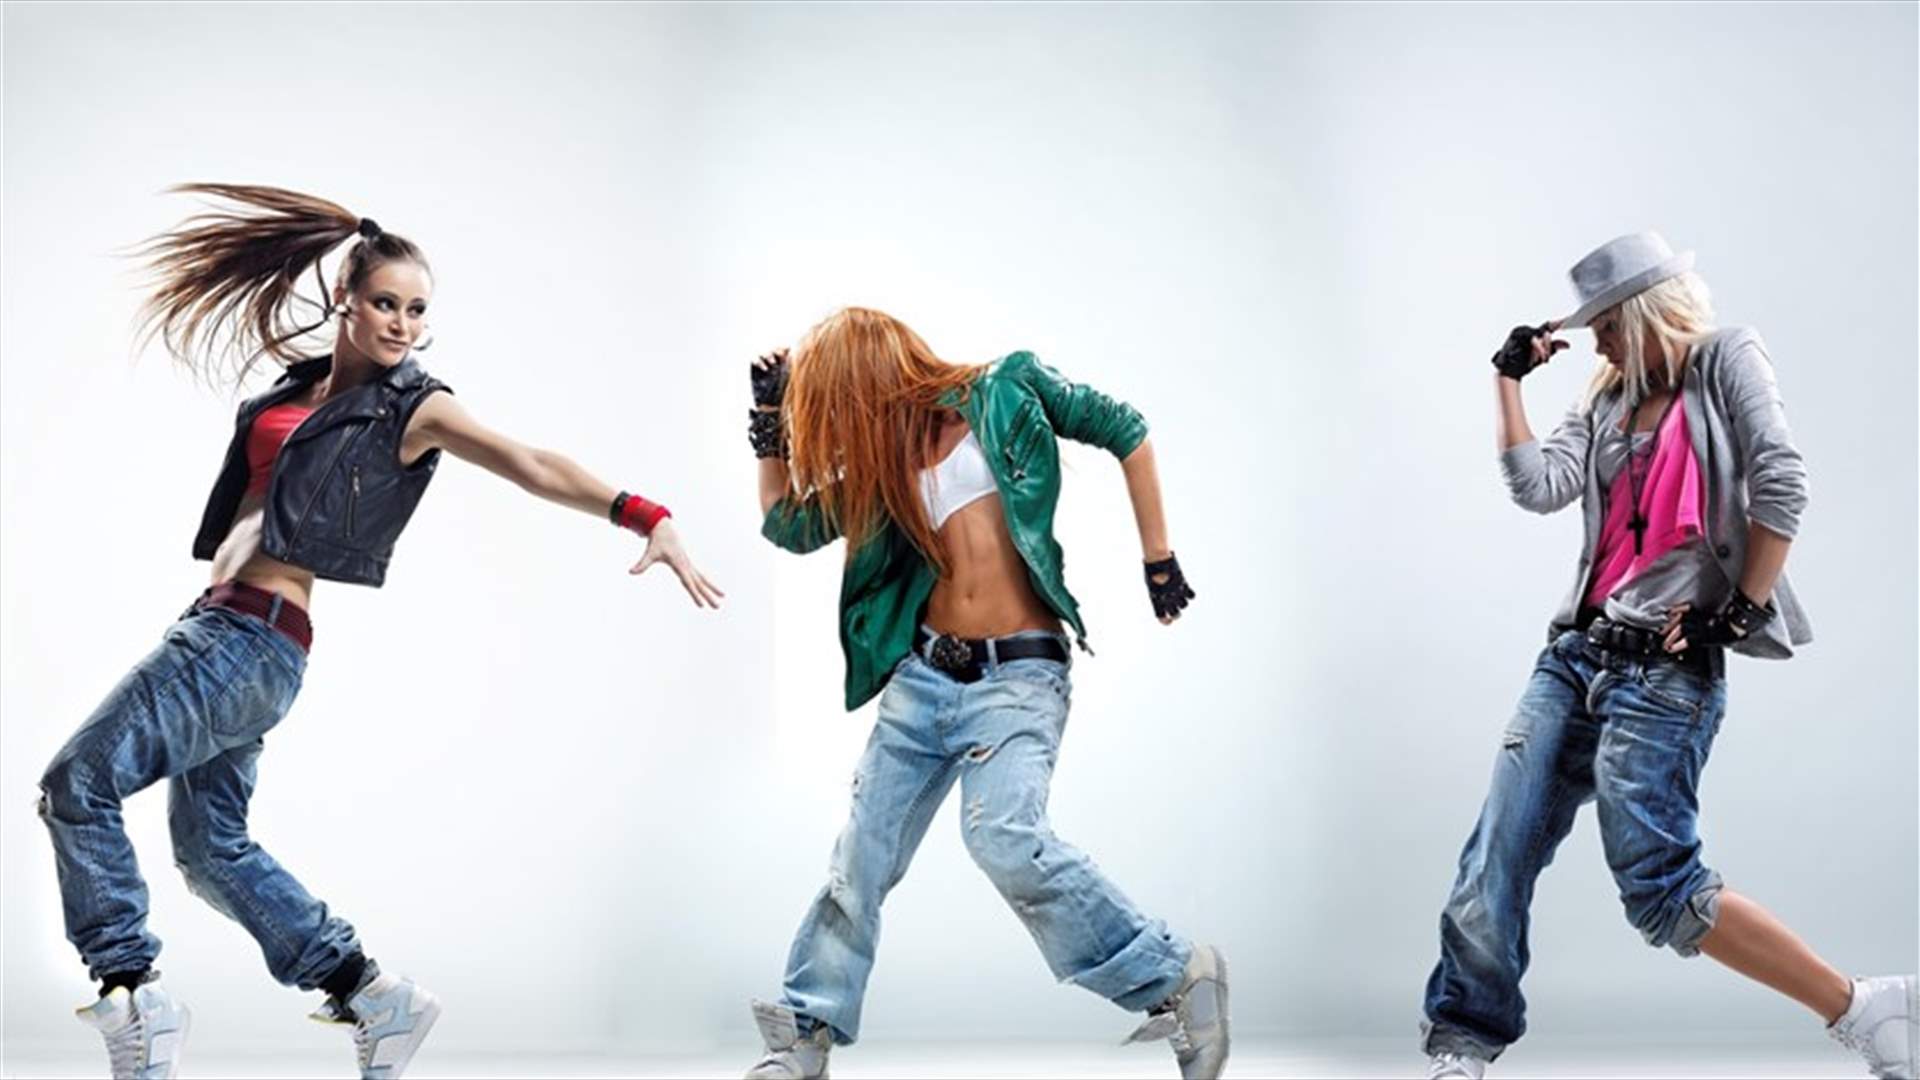 هذه الحركات تساعدكم على تقييم مدى براعة النساء في الرقص!